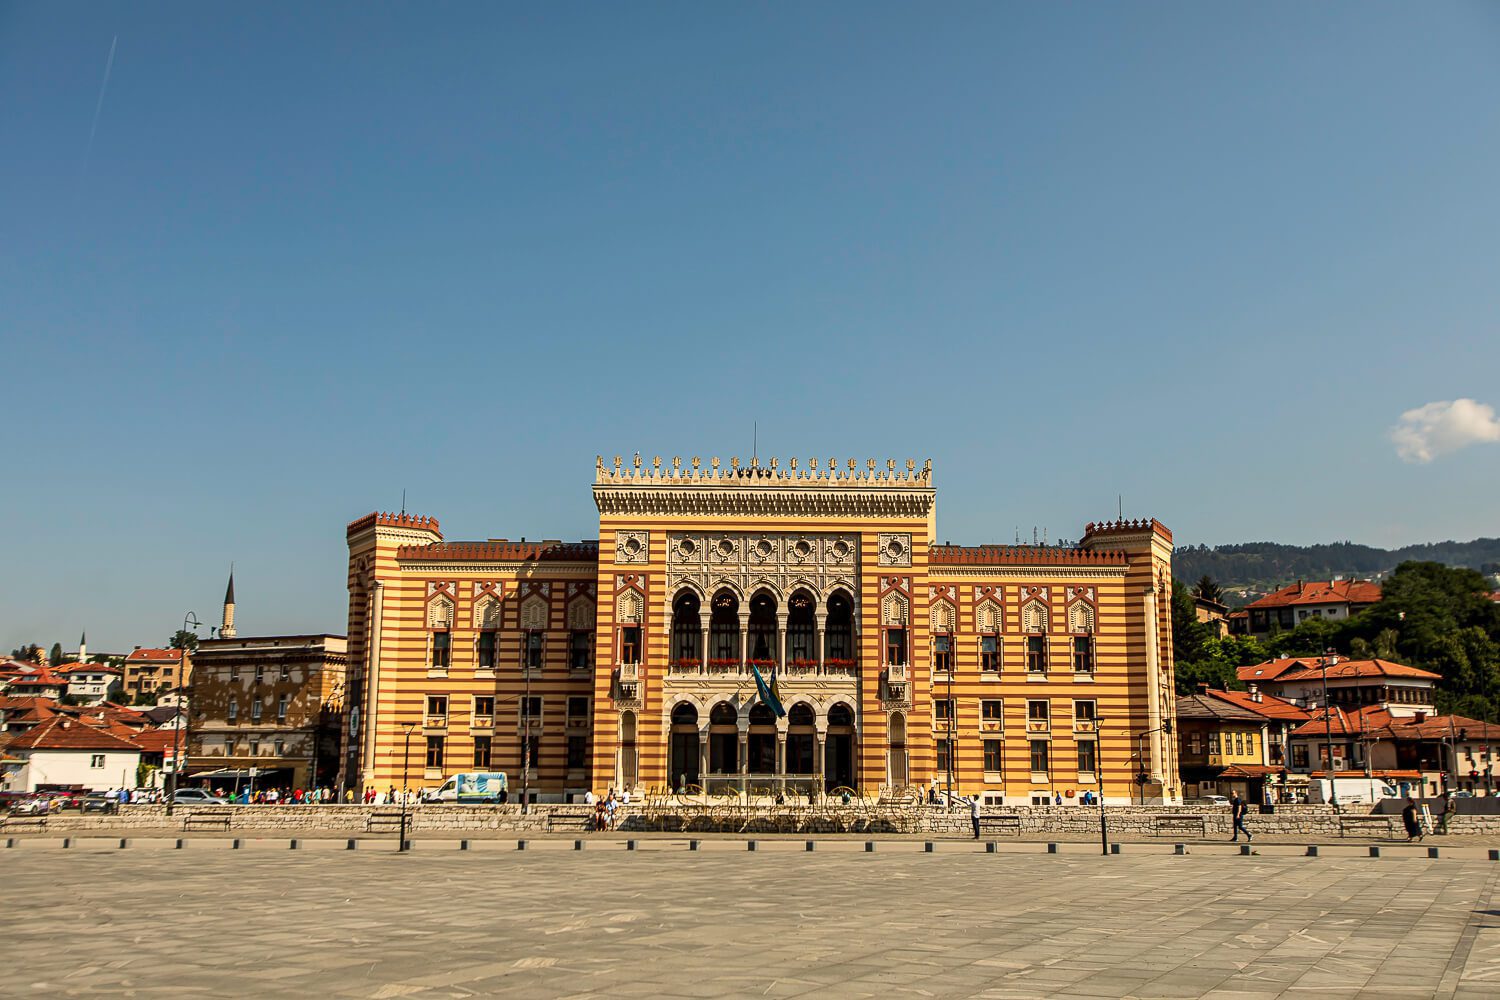 Sarajevo City Hall building